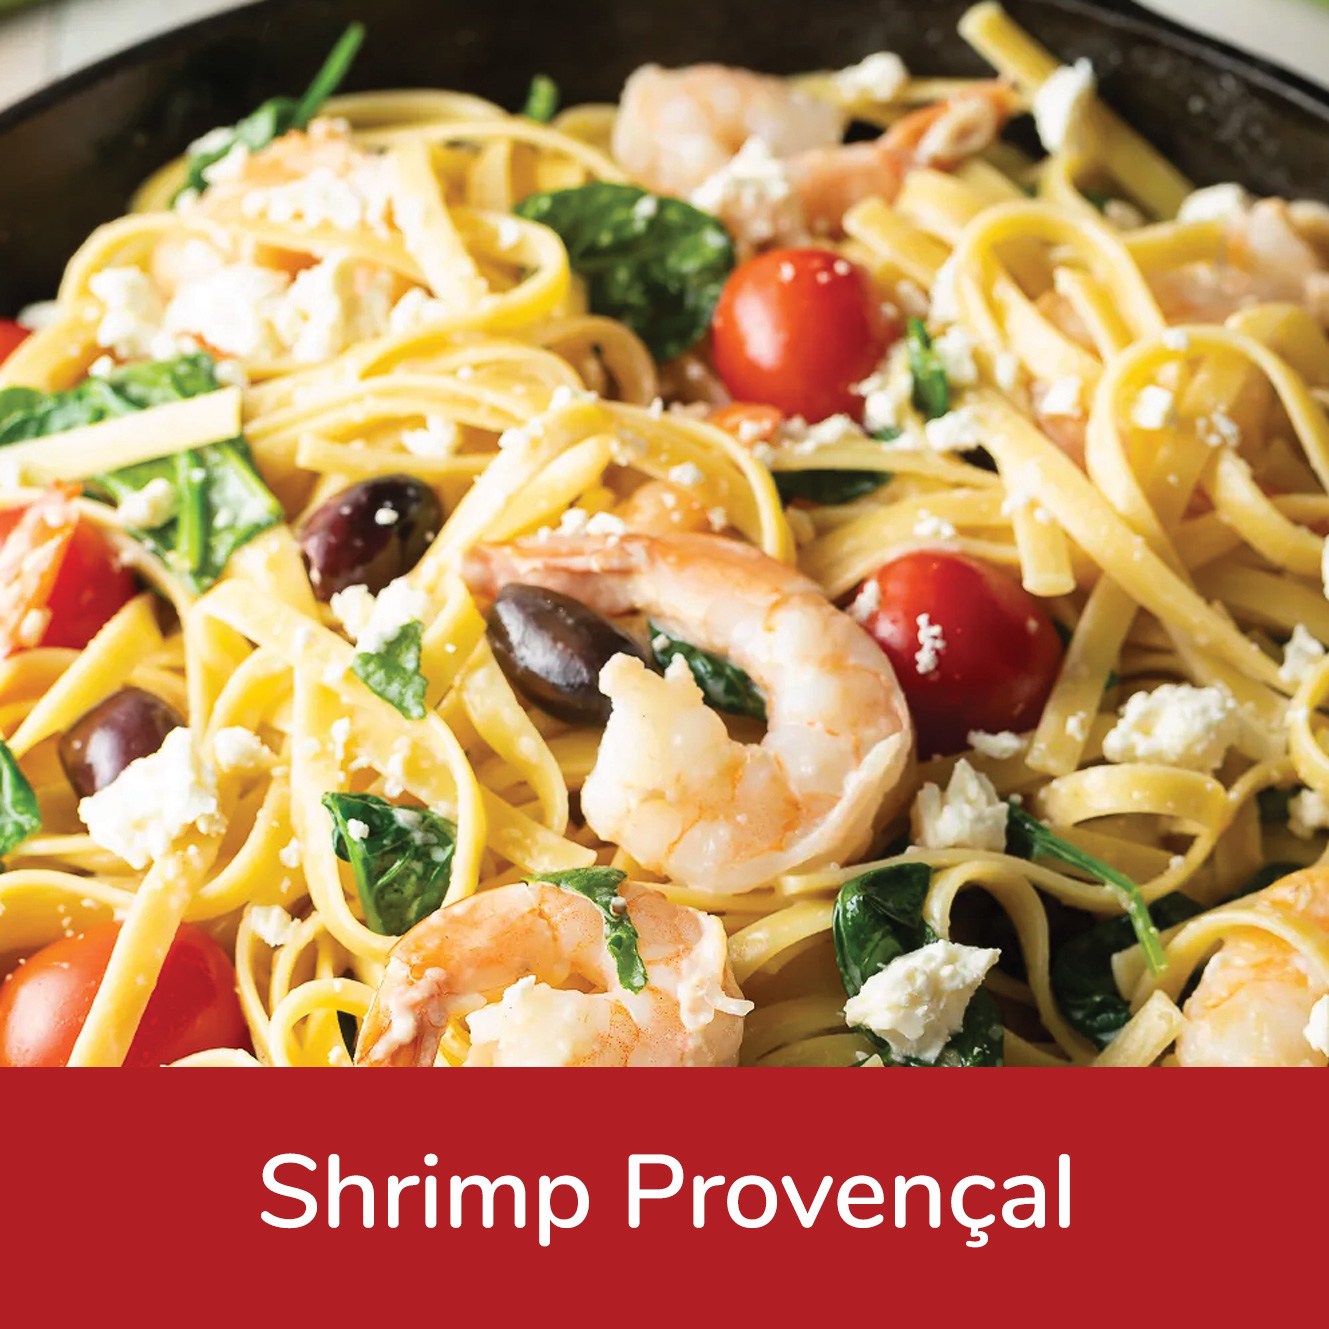 Dish of shrimp provençal